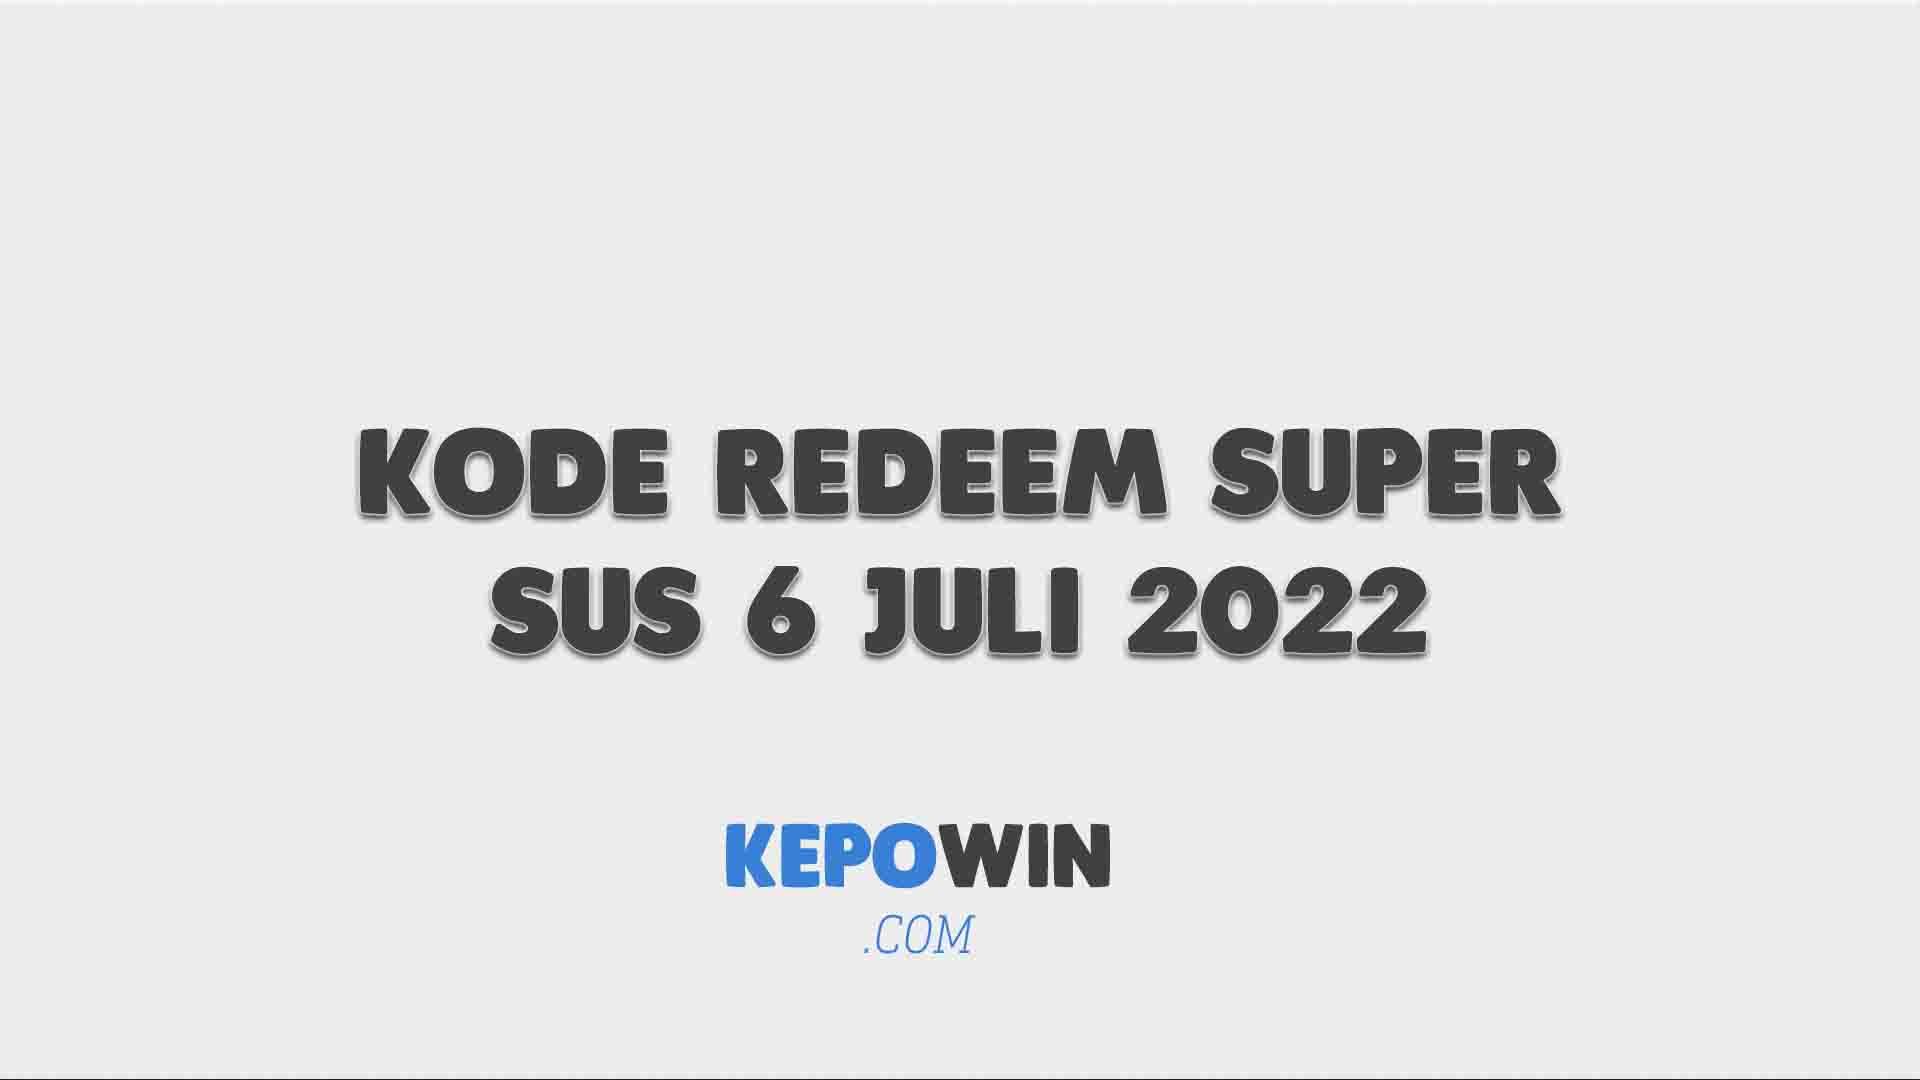 Kode Redeem Super Sus 6 Juli 2022 Hari Ini Terbaru